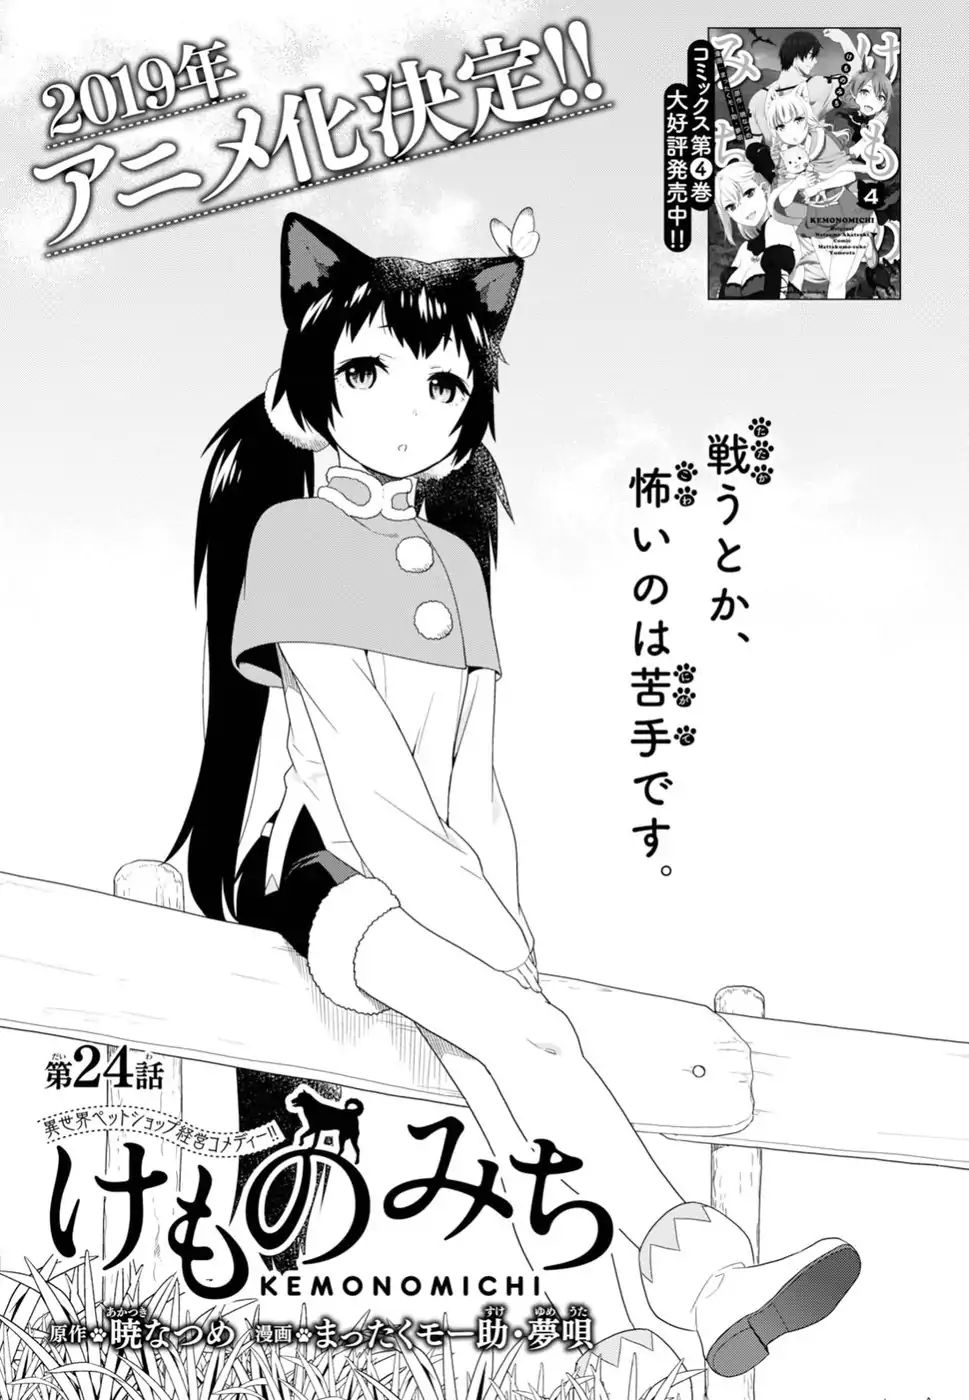 Read Kemono Michi (Natsume Akatsuki) Manga English [New Chapters] Online  Free - MangaClash